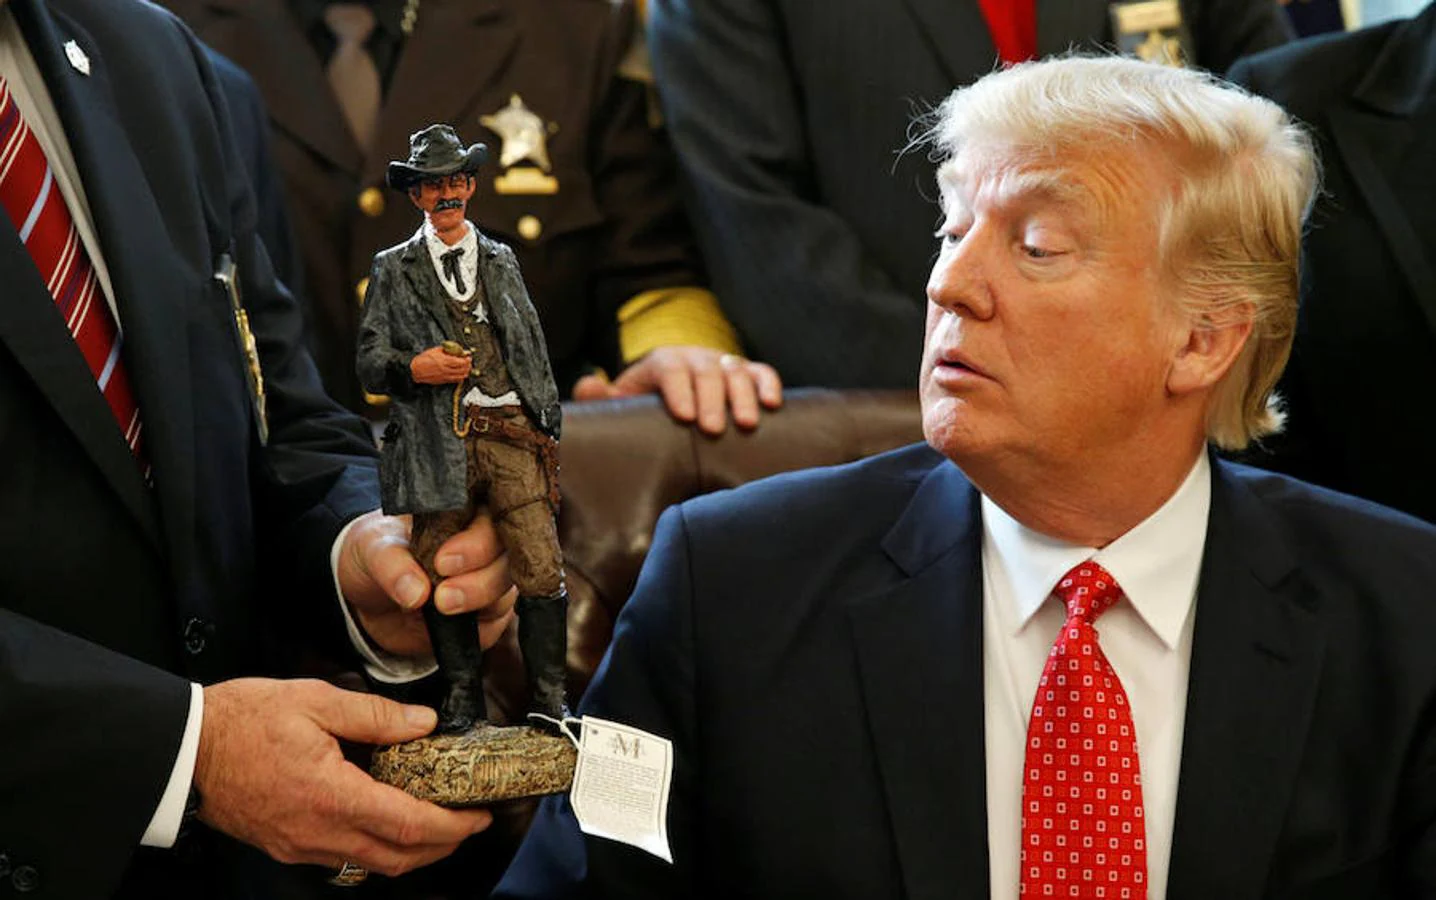 El presidente de los Estados Unidos, Donald Trump, recibe una estatuilla de un sheriff durante una reunión con los sheriffs del condado en la Casa Blanca en Washington